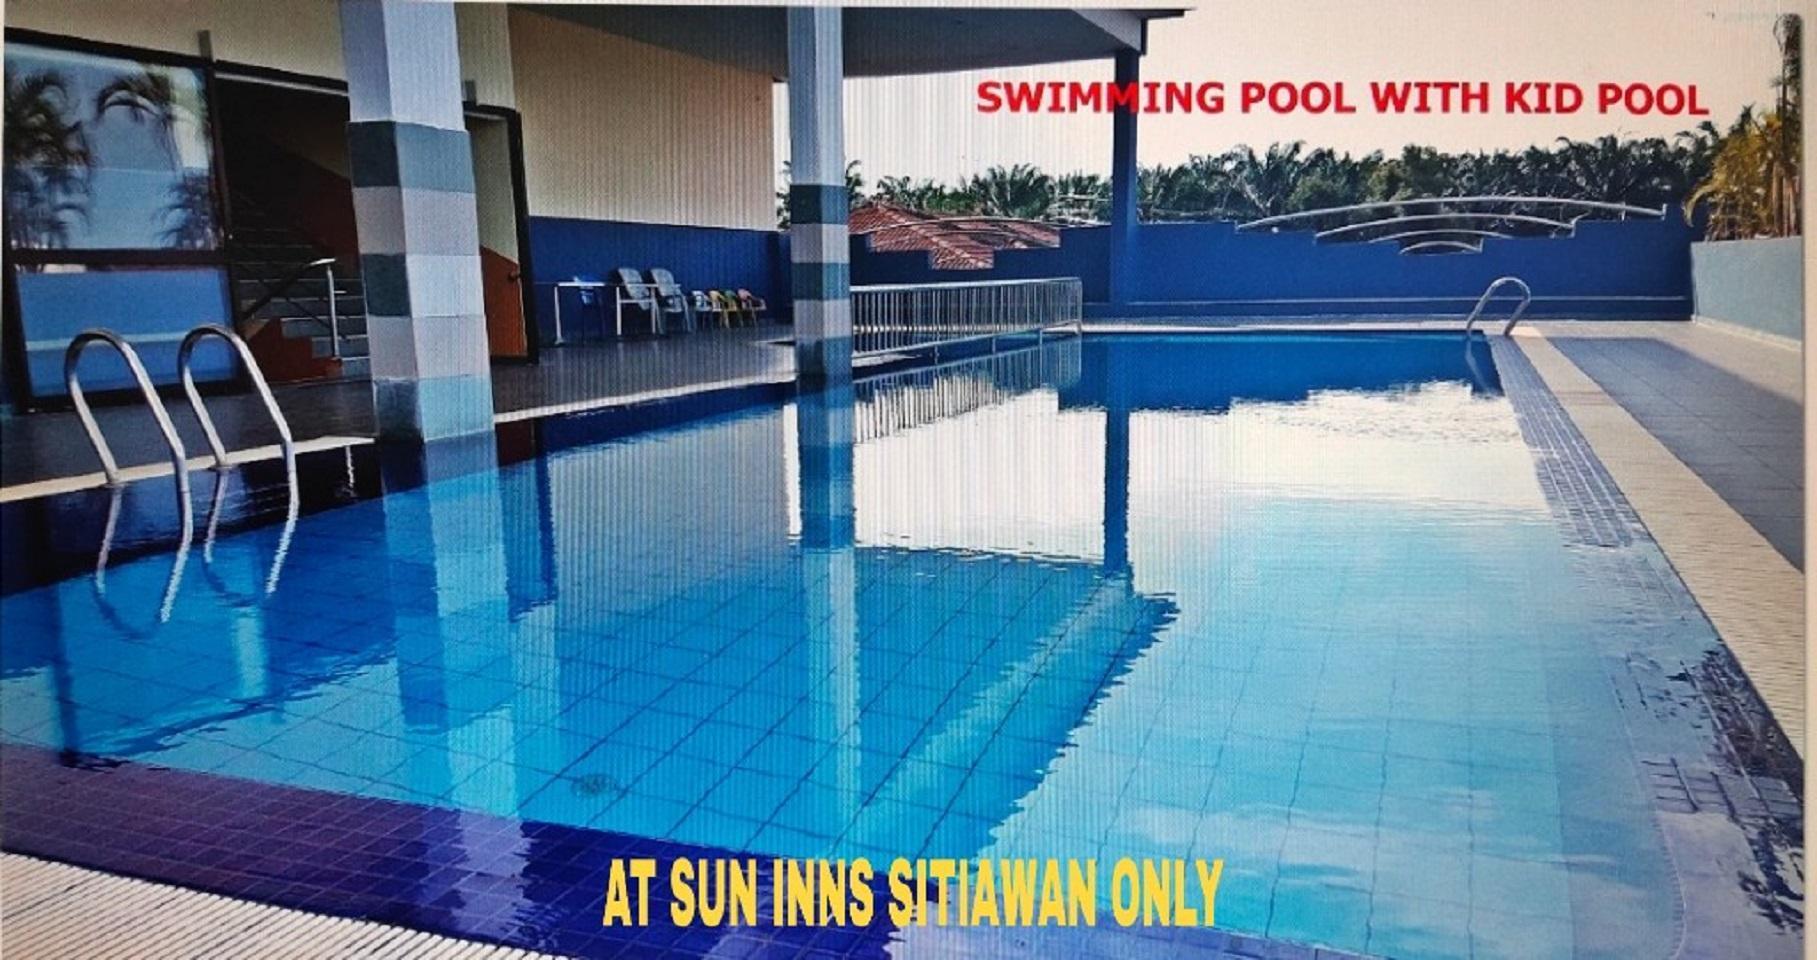 Sun Inns Hotel D'Mind 2, Ktm Serdang Seri Kembangan Exterior photo